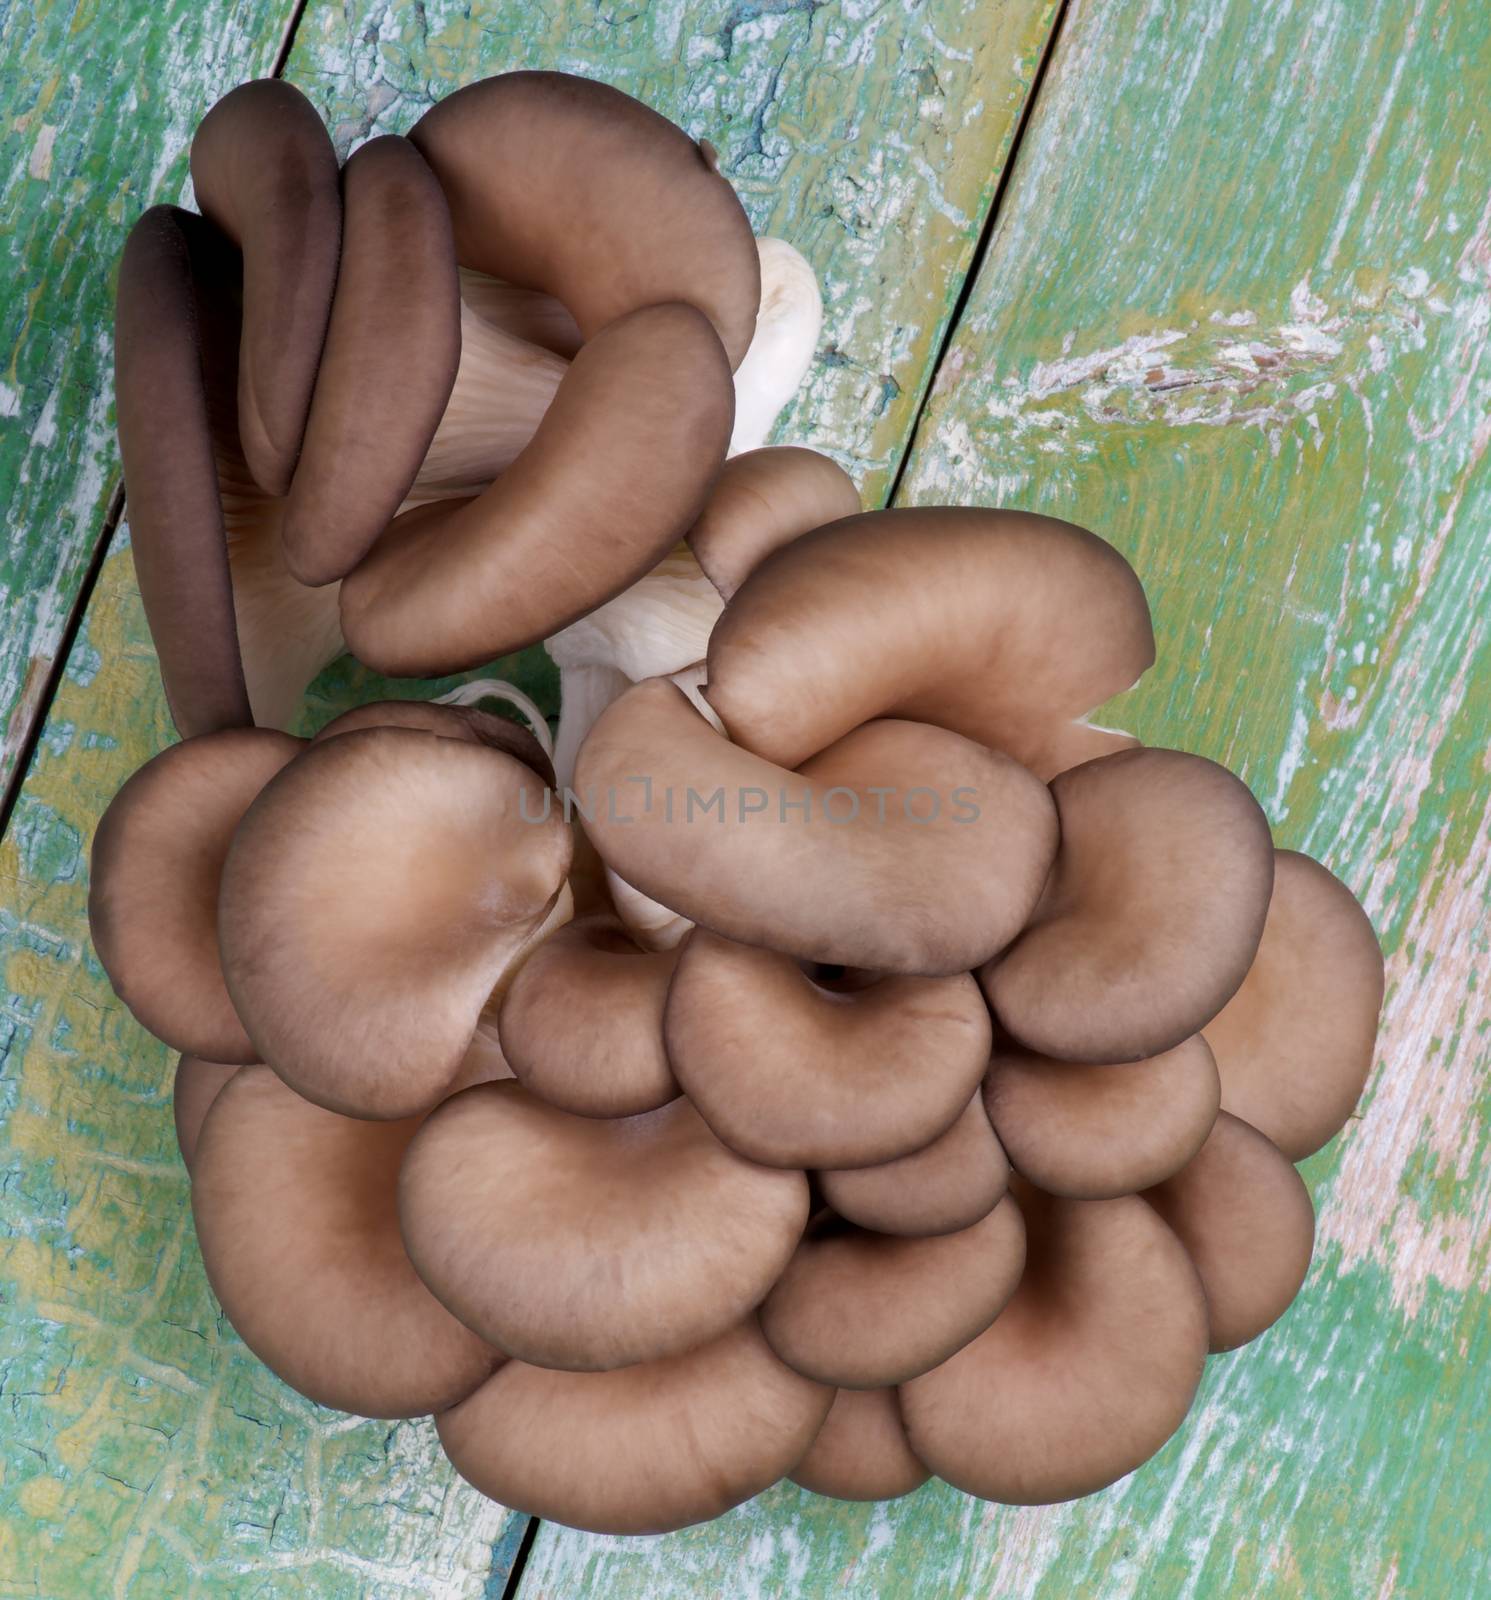 Raw Oyster Mushrooms by zhekos